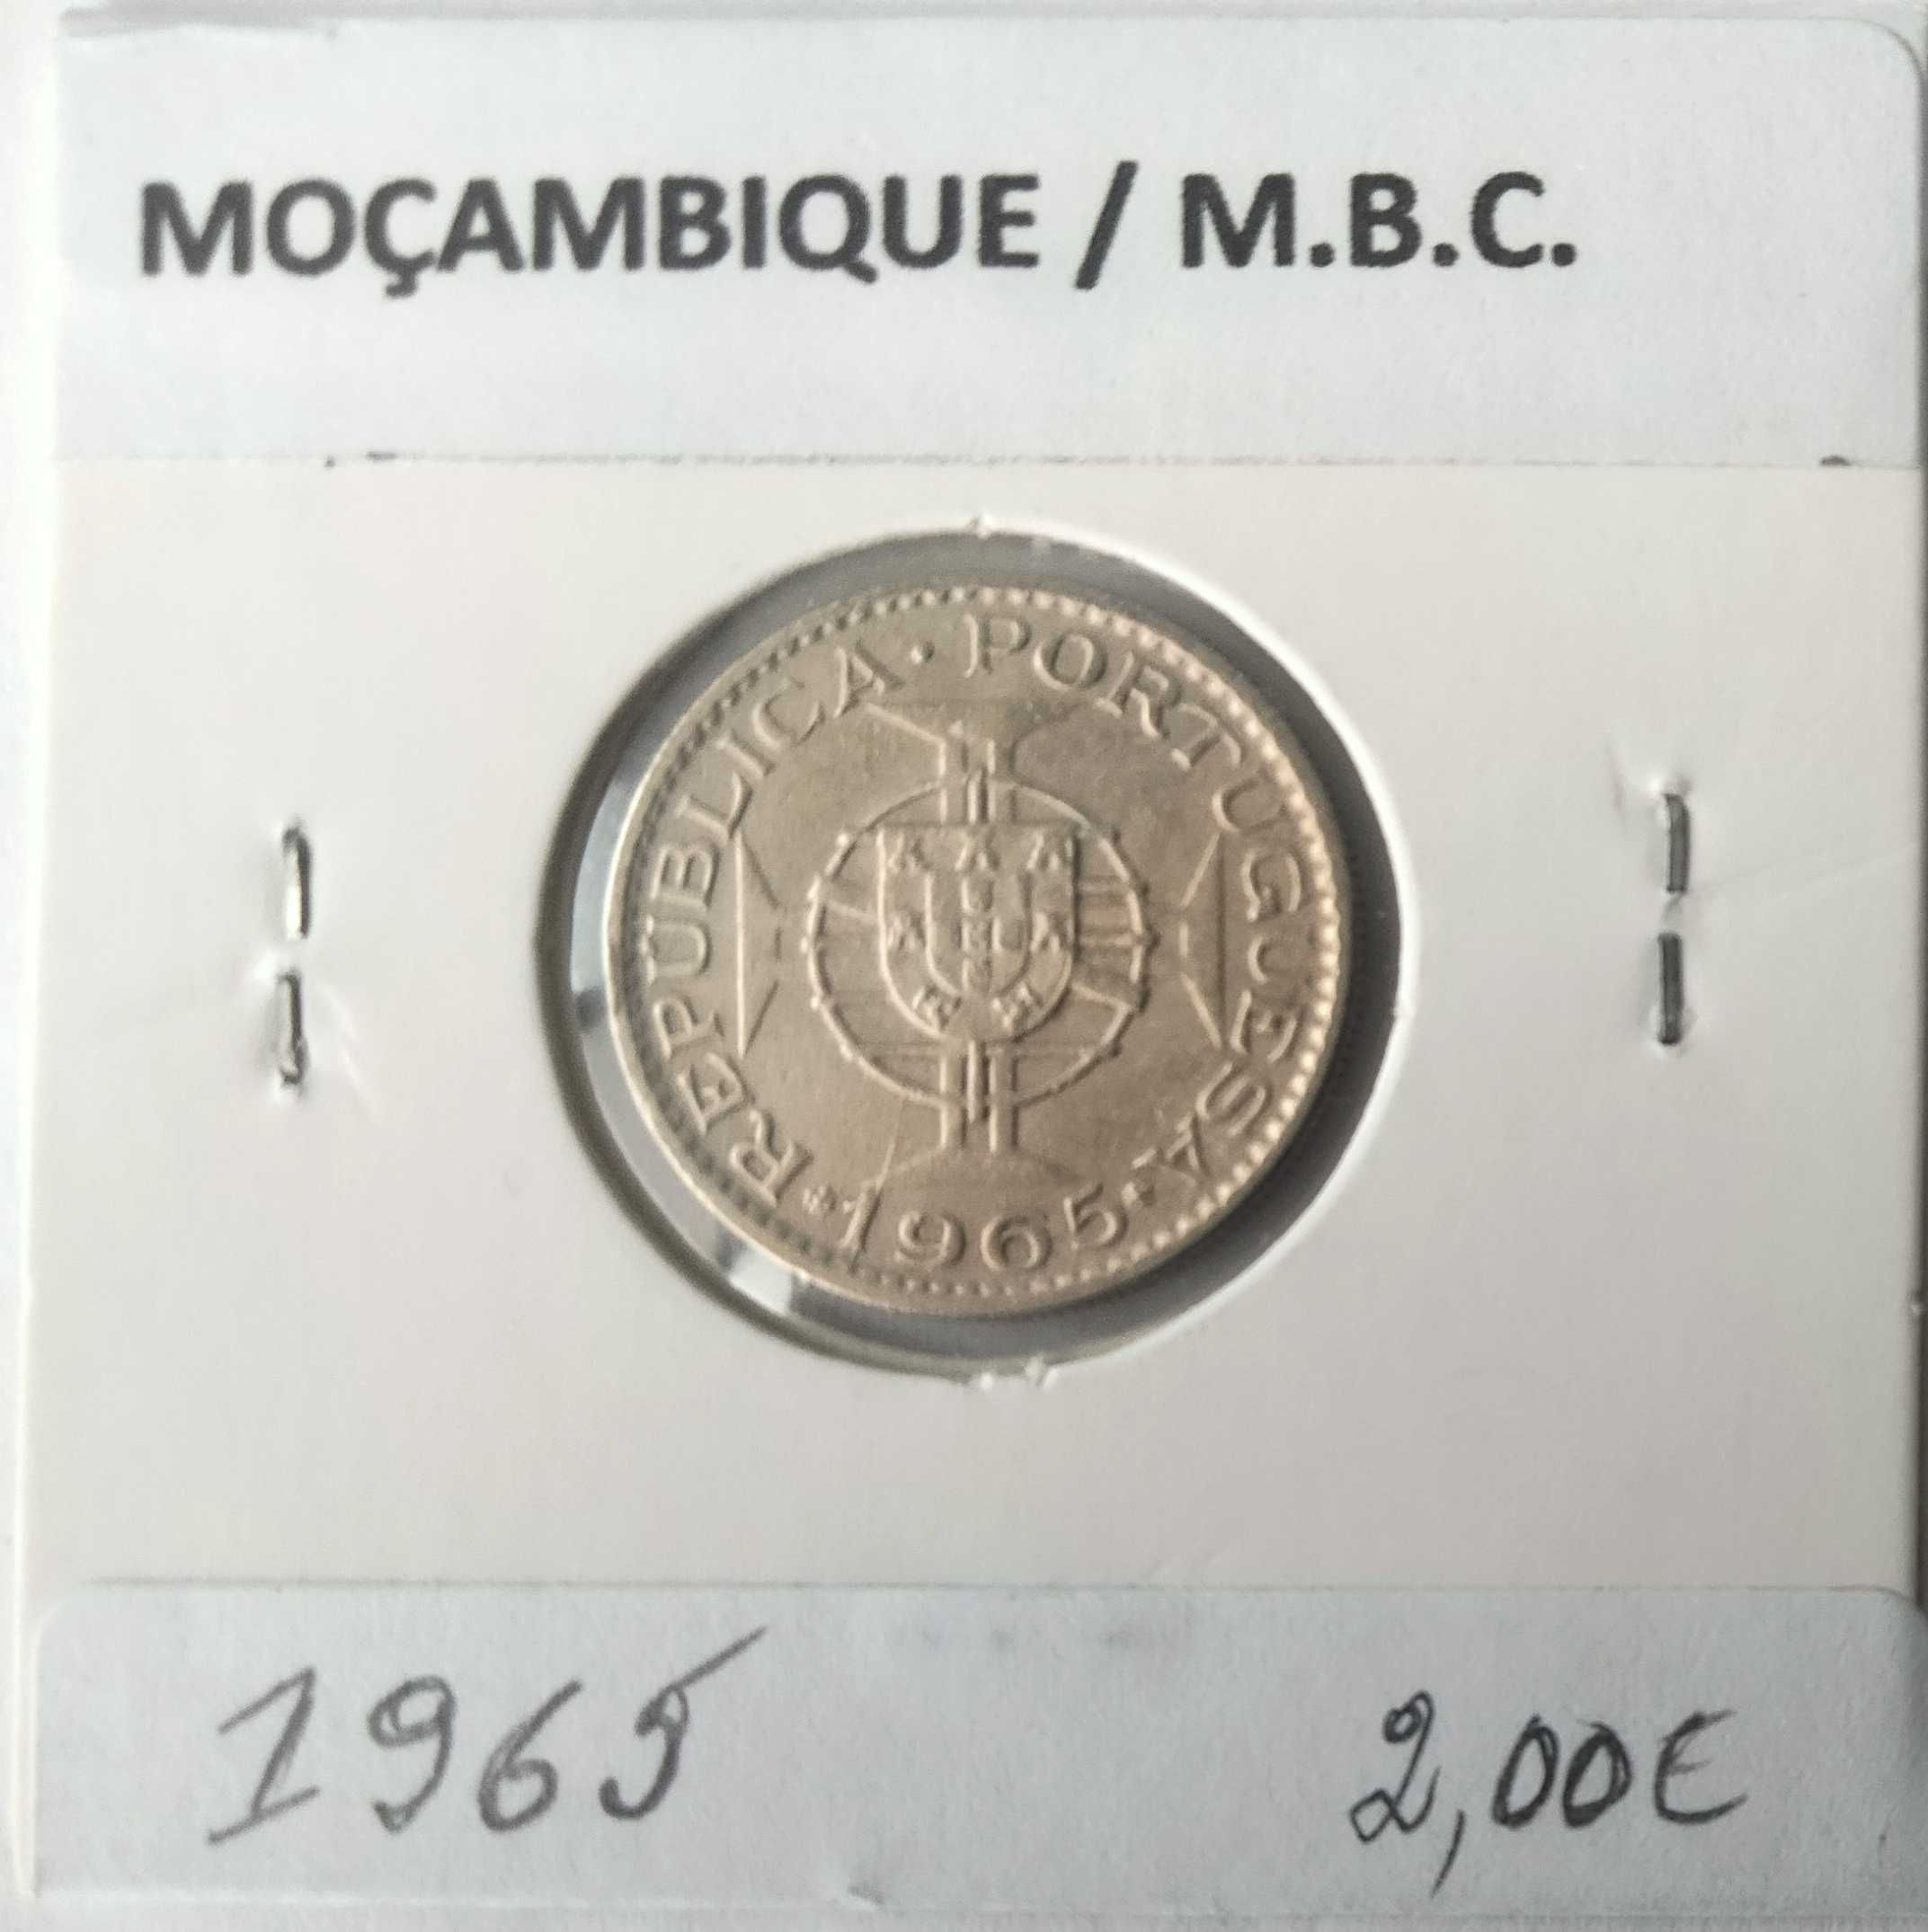 Moedas Portuguesas de 5 e 2,50 Escudos da Ex Colónia de Moçambique